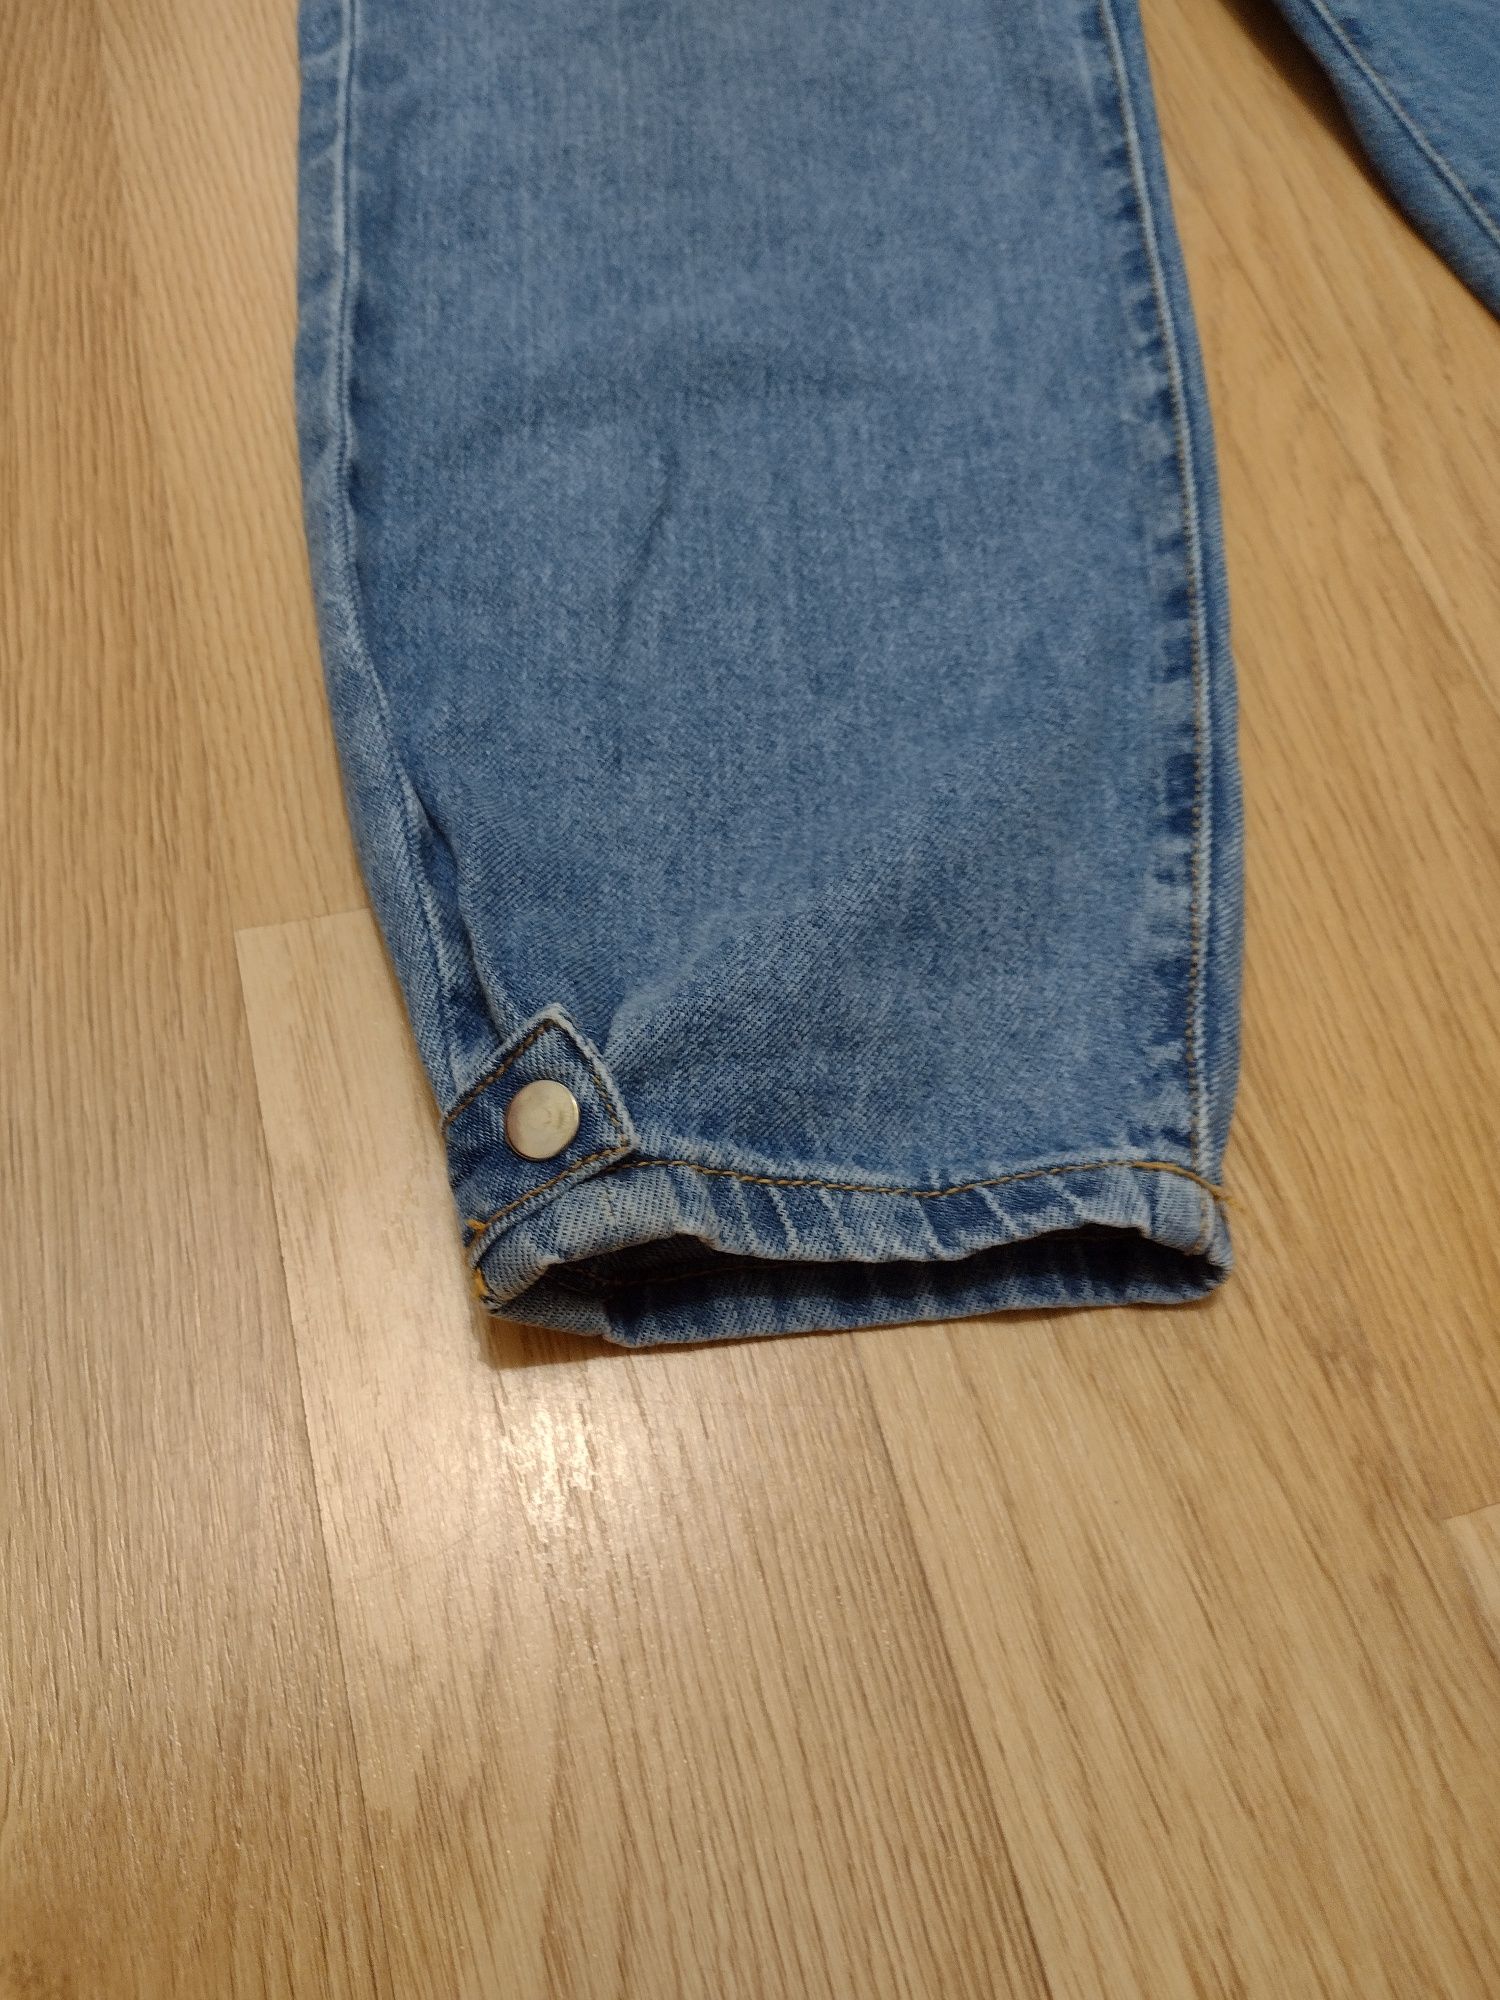 Kombinezon jeansowy dlugi dla dziewczynki 164cm Zara